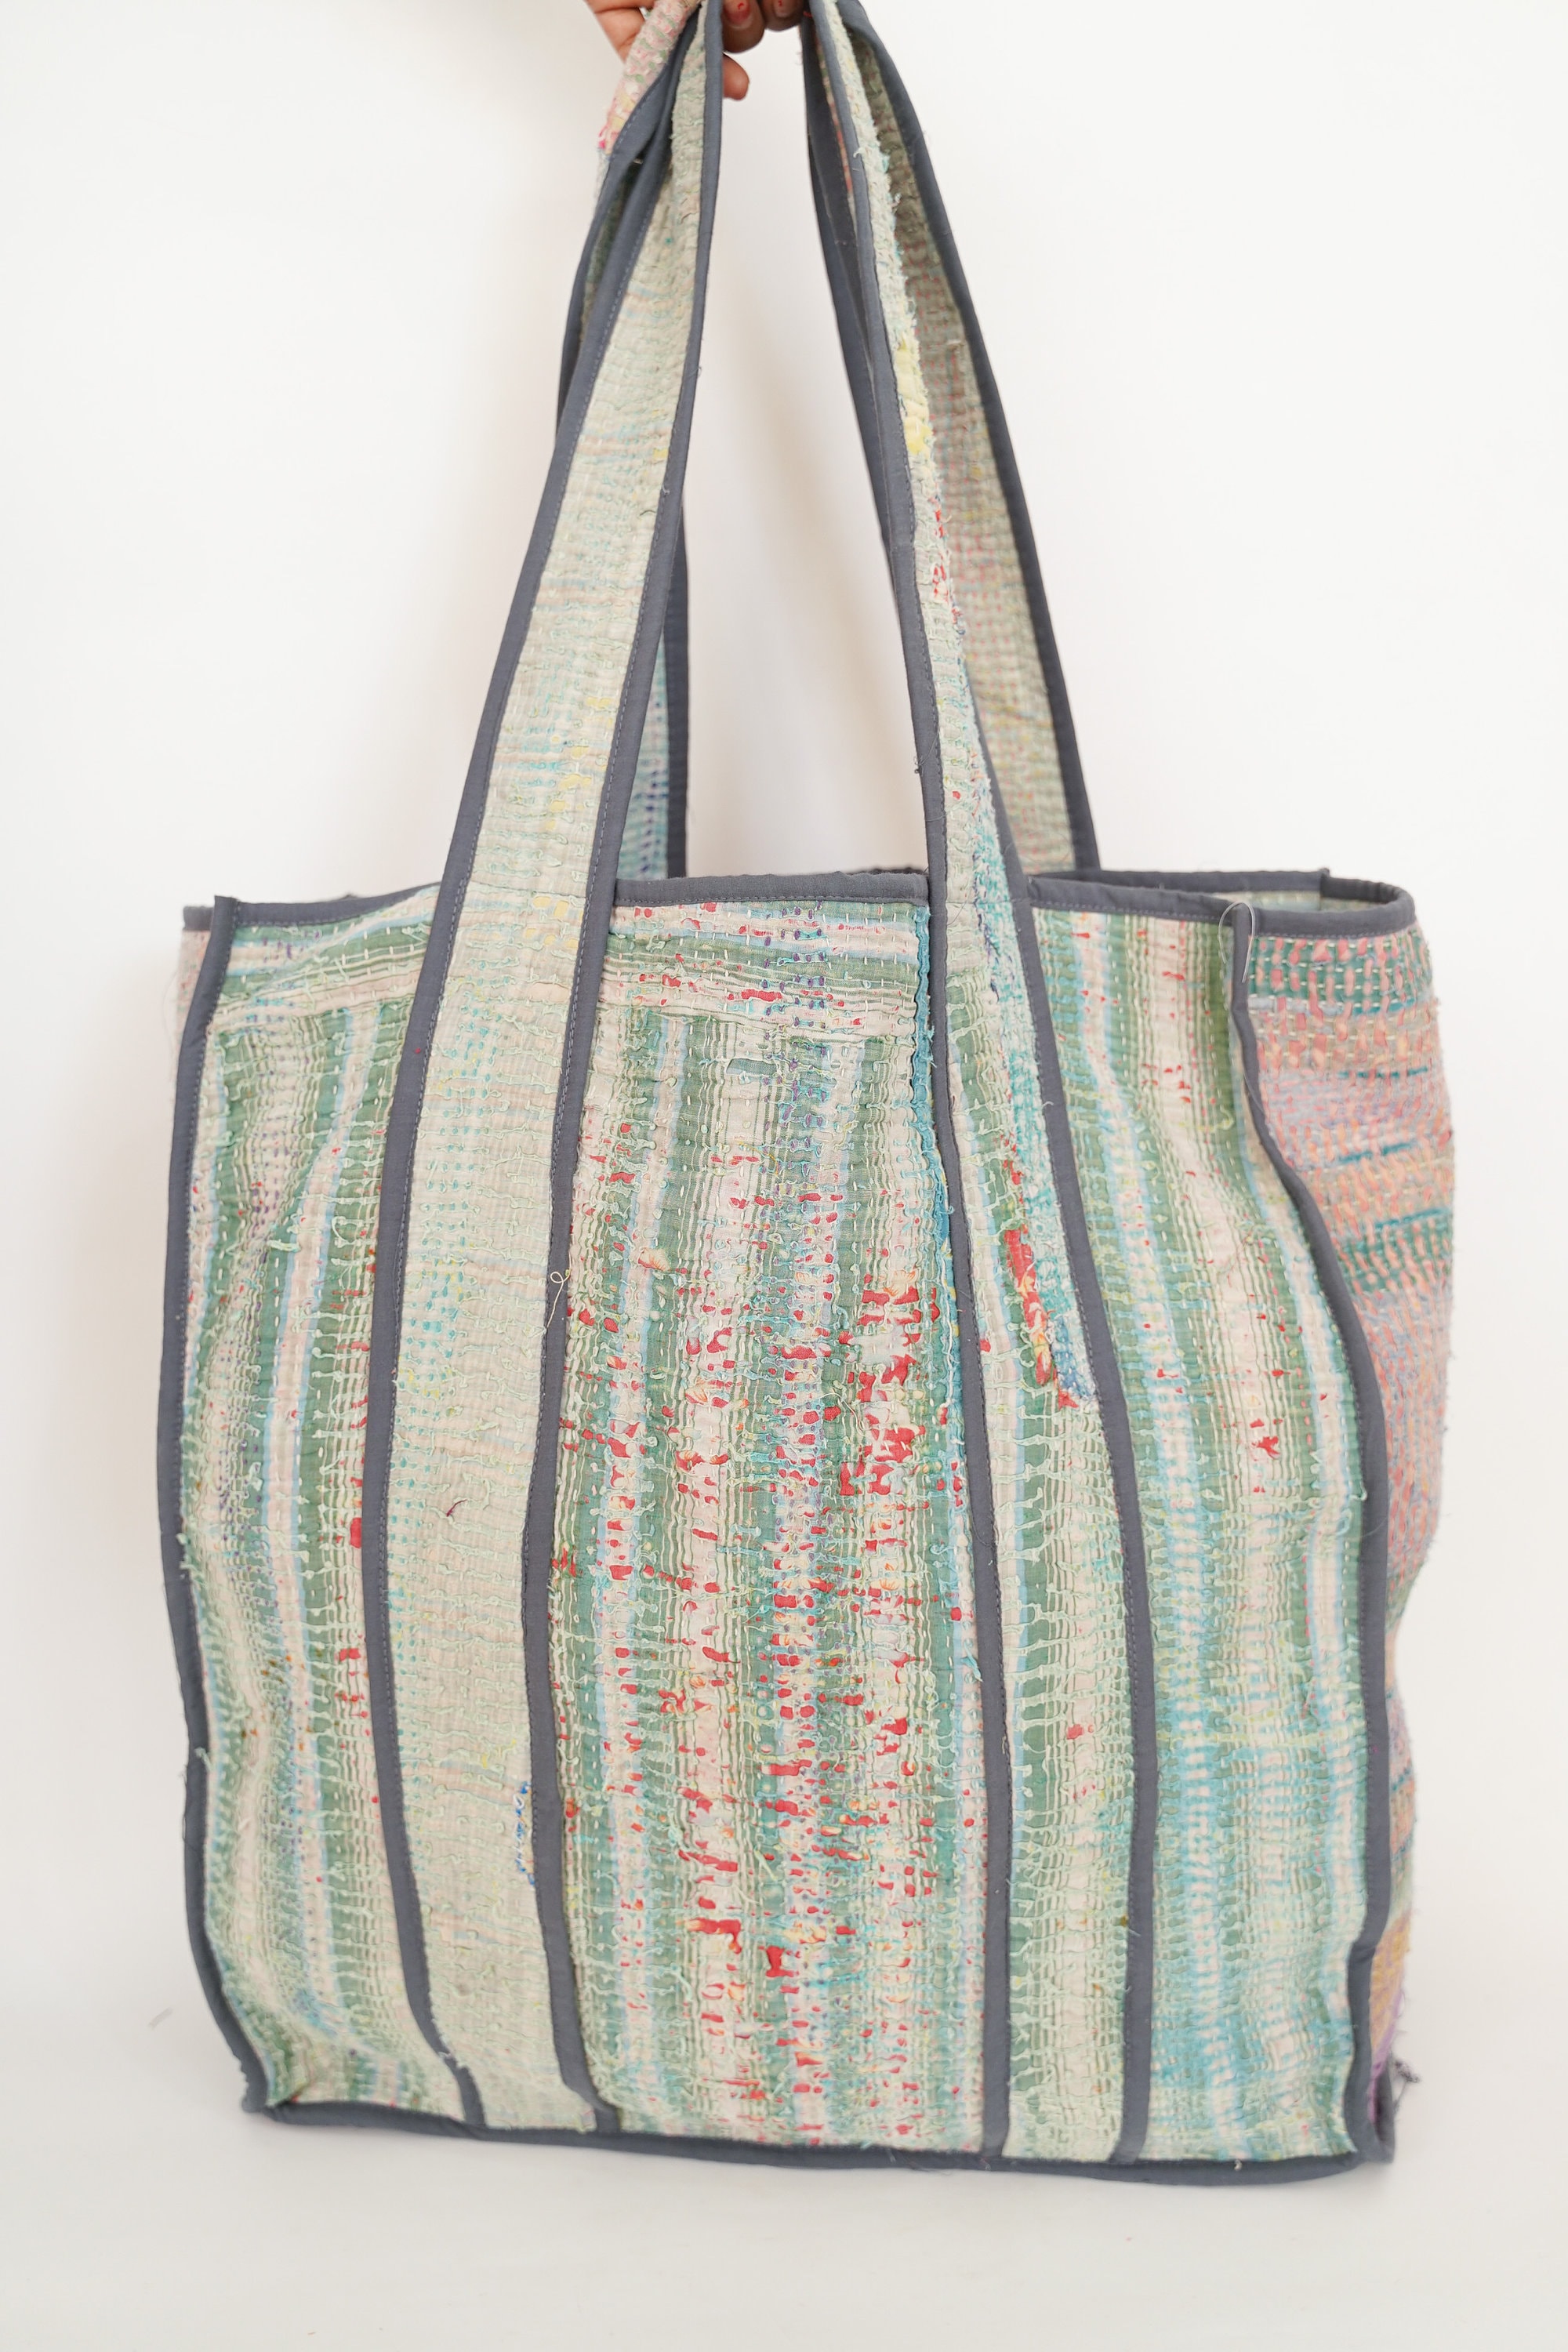 Indha Craft Hand Block Printed Cotton Jhola Bag With Hand Embroidered  Lantern Motif शोल्डर बैग - Shoulder Bag - Flipkart.com